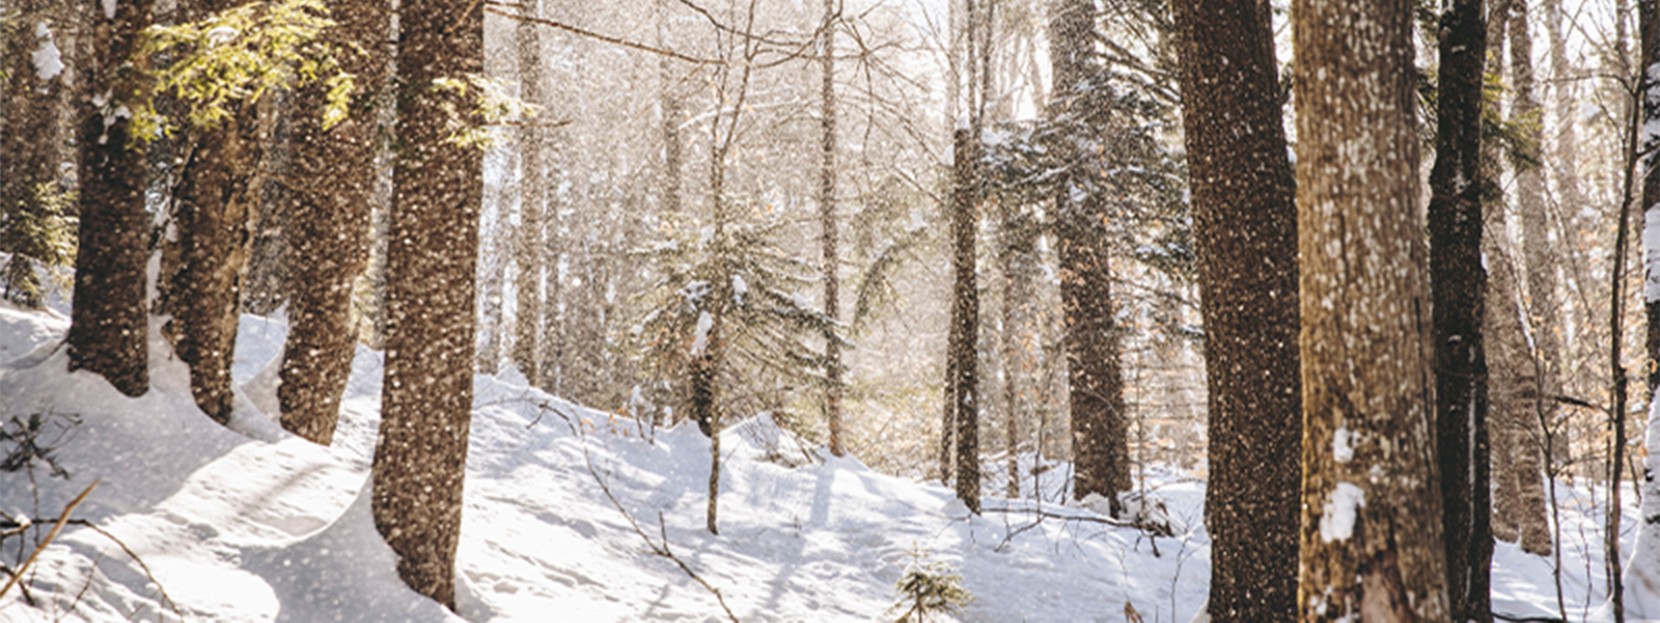 Snowy scene in Vermont